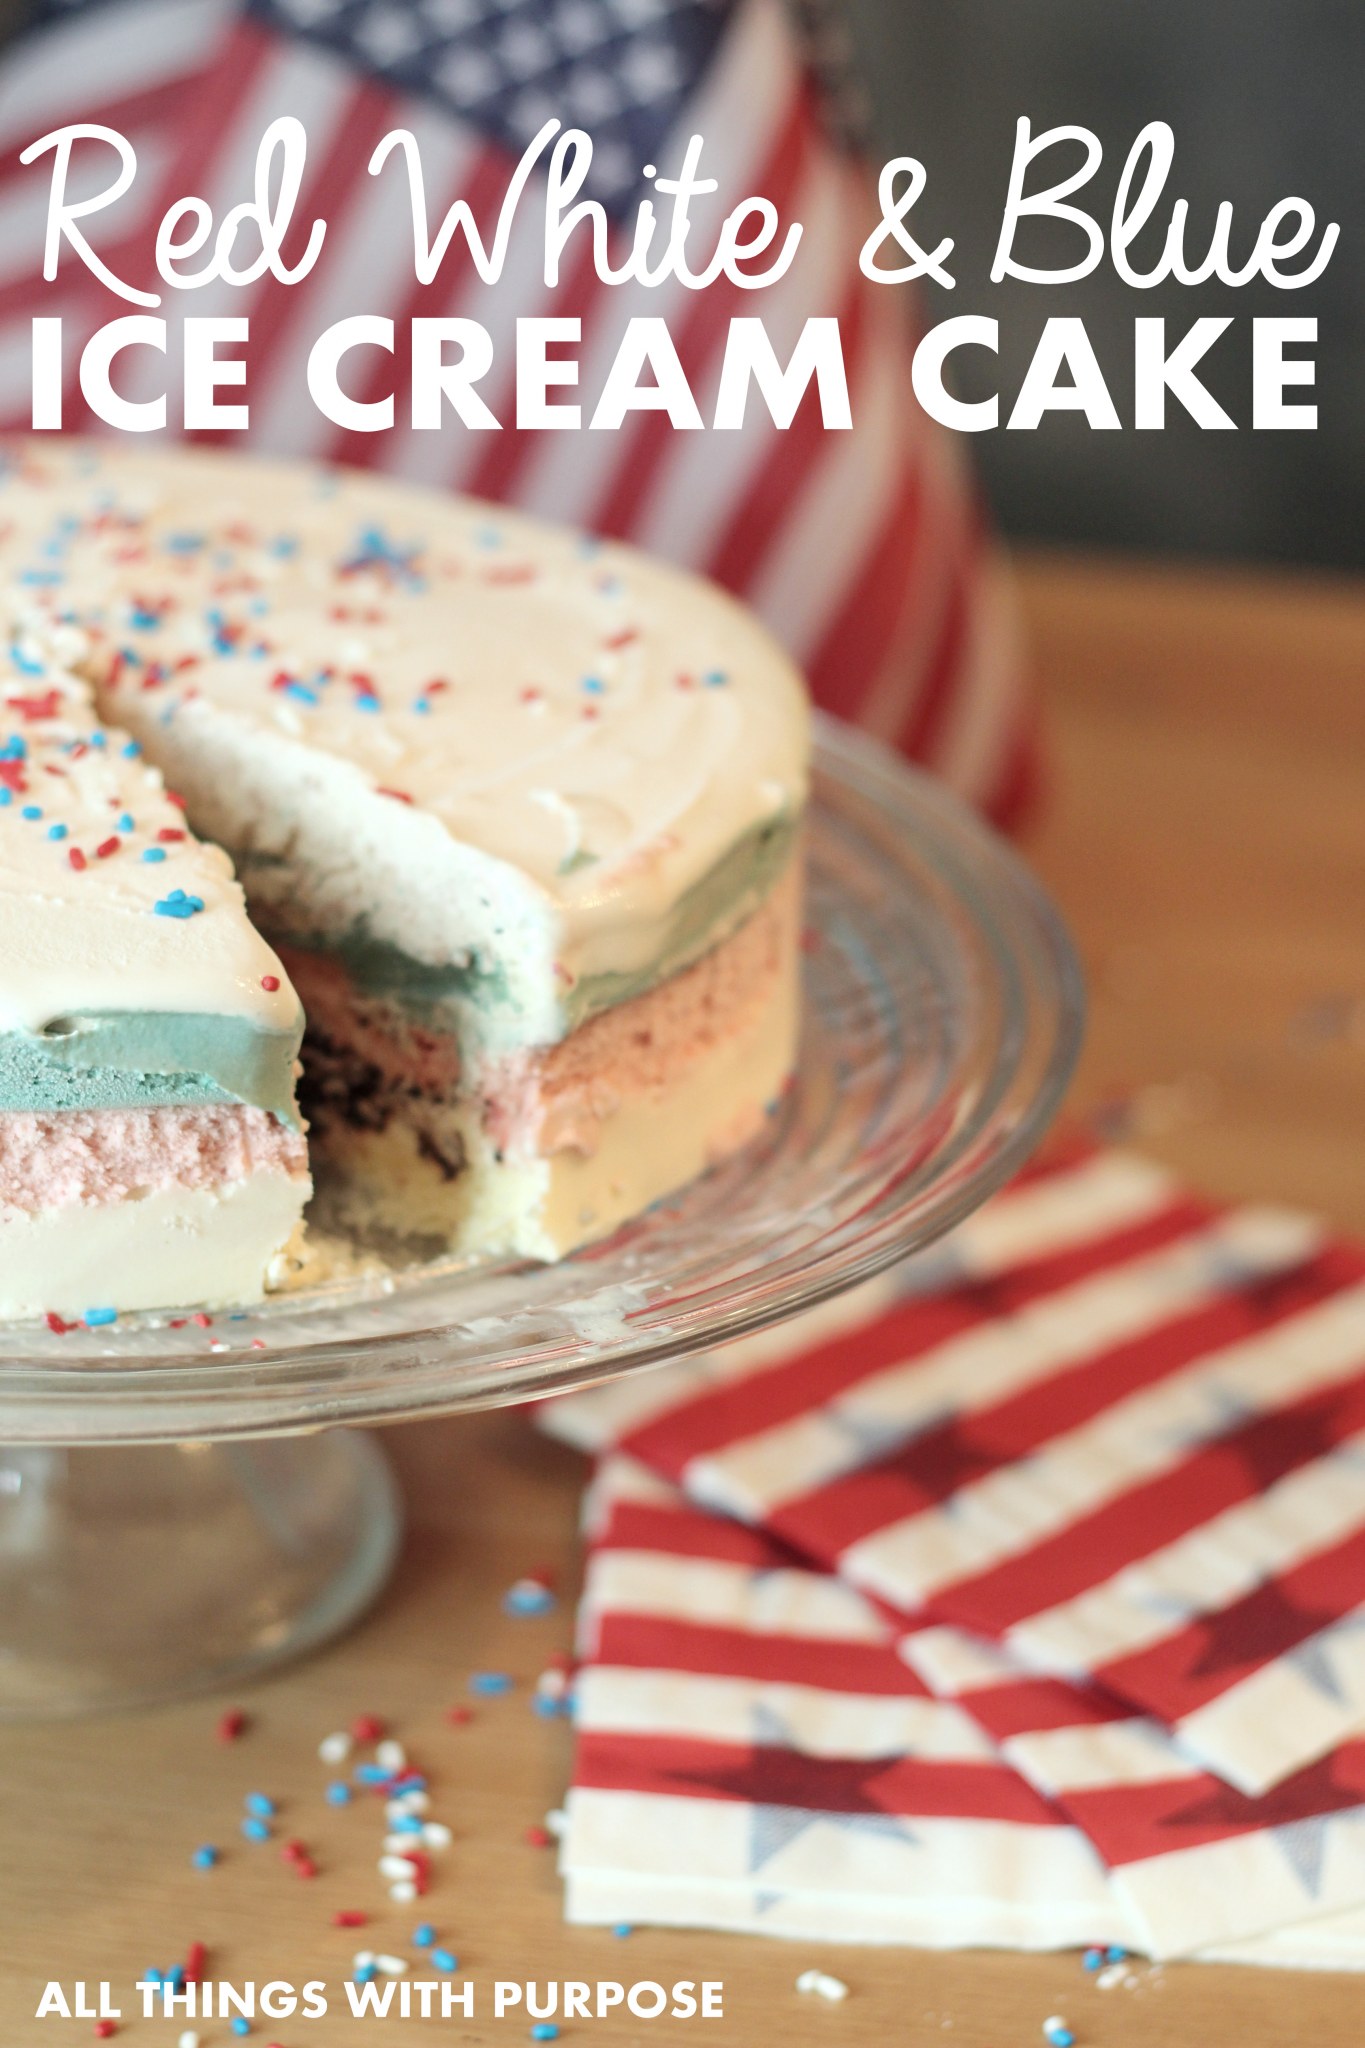 Red White and Blue Ice Cream Cake (like DQ ice cream cake)